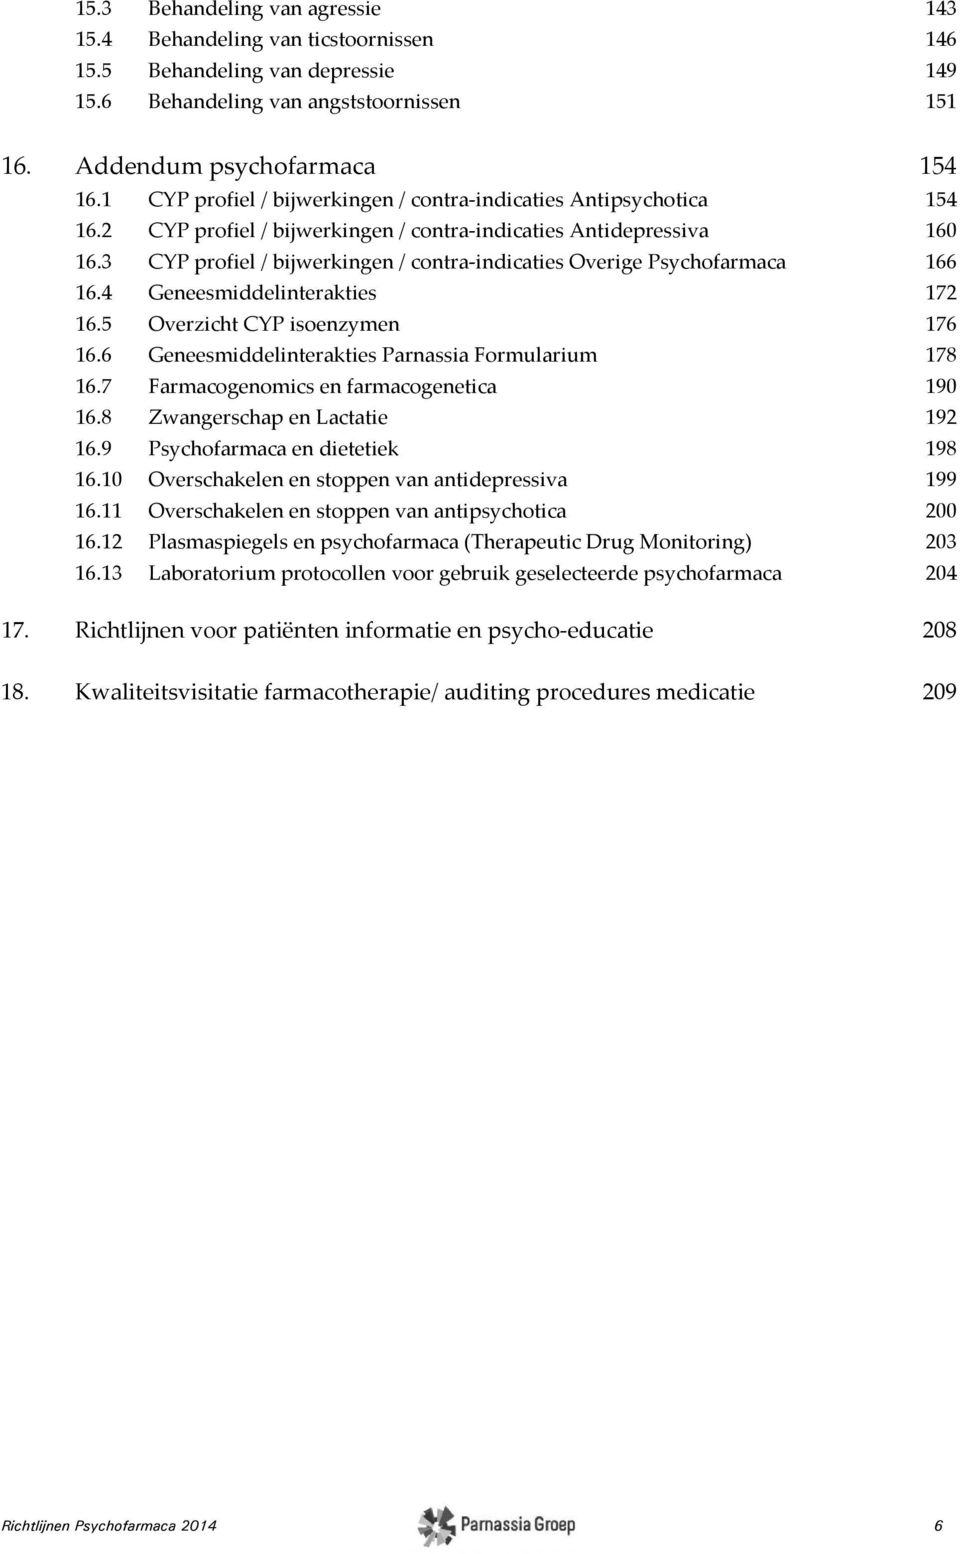 3 CYP profiel / bijwerkingen / contra-indicaties Overige Psychofarmaca 166 16.4 Geneesmiddelinterakties 172 16.5 Overzicht CYP isoenzymen 176 16.6 Geneesmiddelinterakties Parnassia Formularium 178 16.